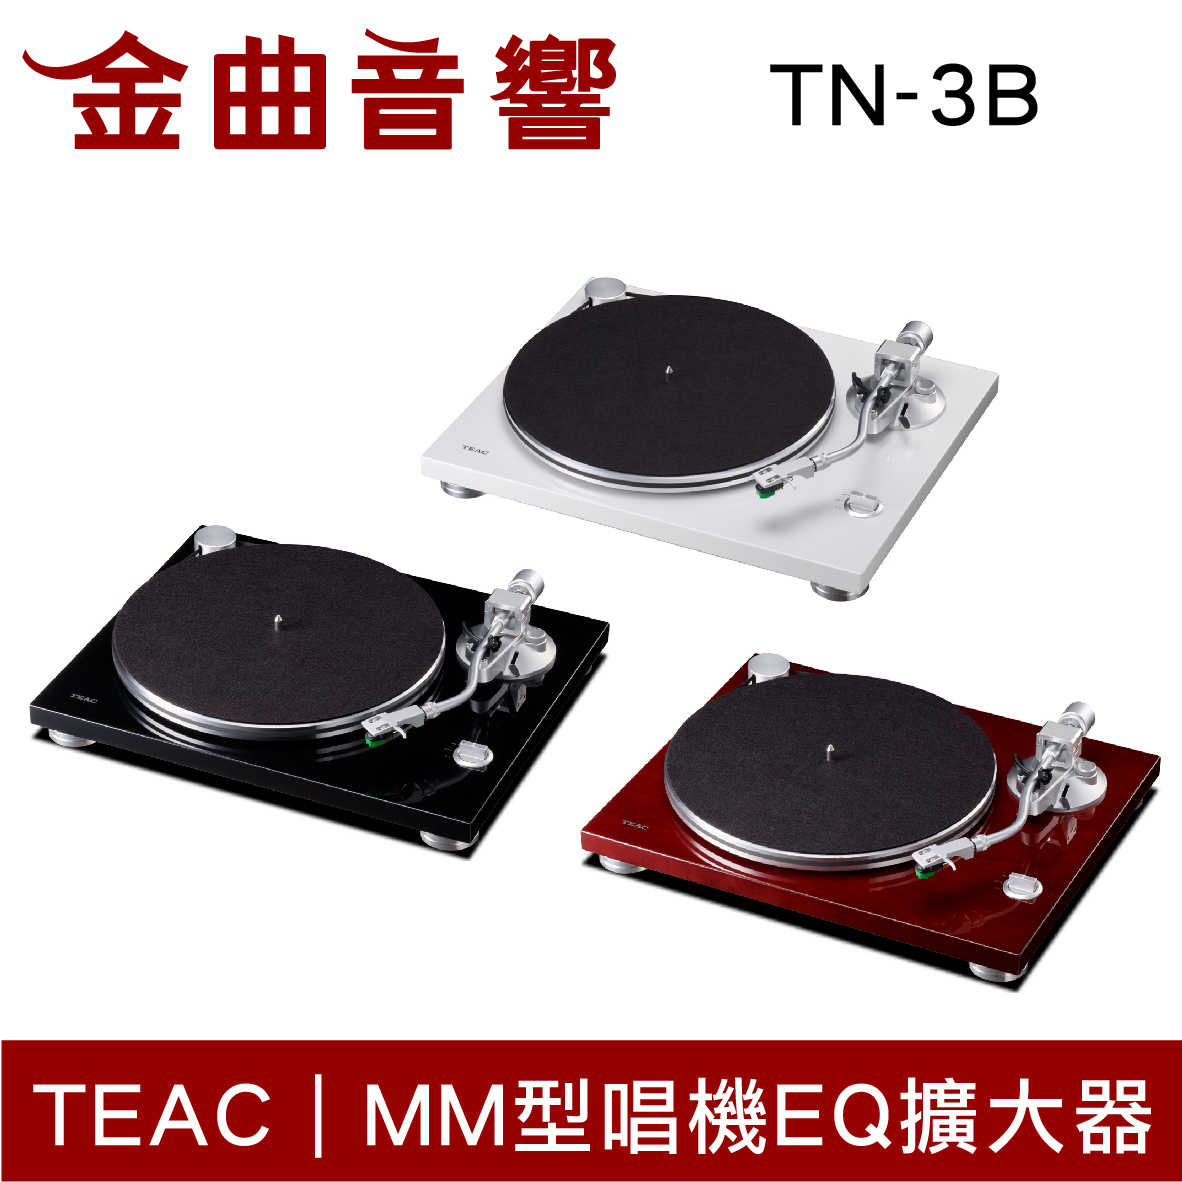 TEAC TN-3B 亮面白 USB 數位輸出 黑膠唱盤 | 金曲音響